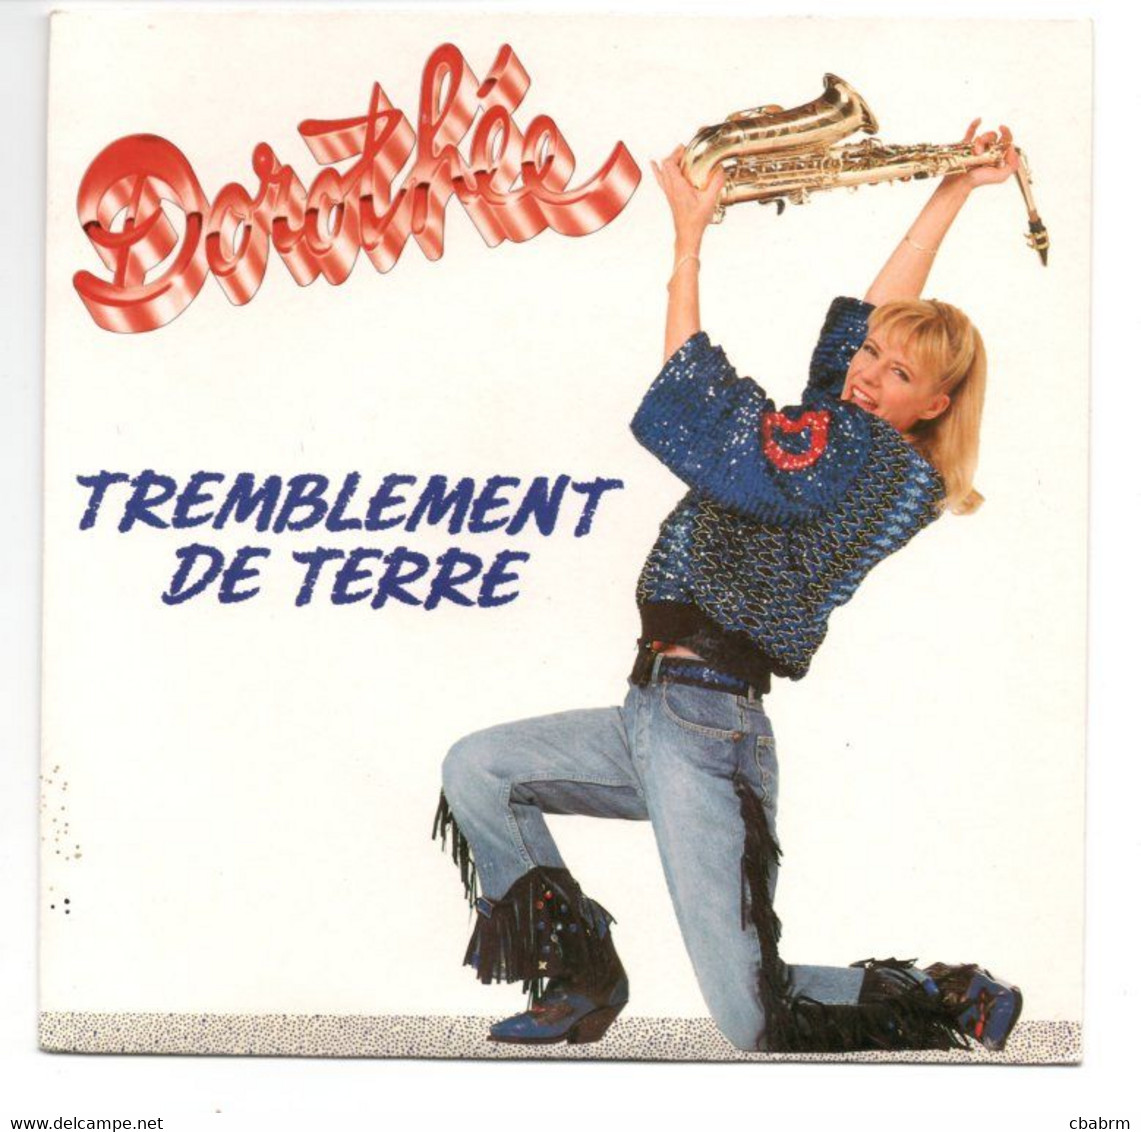 SP 45 TOURS DOROTHEE TREMBLEMENT DE TERRE 1989 FRANCE - Niños